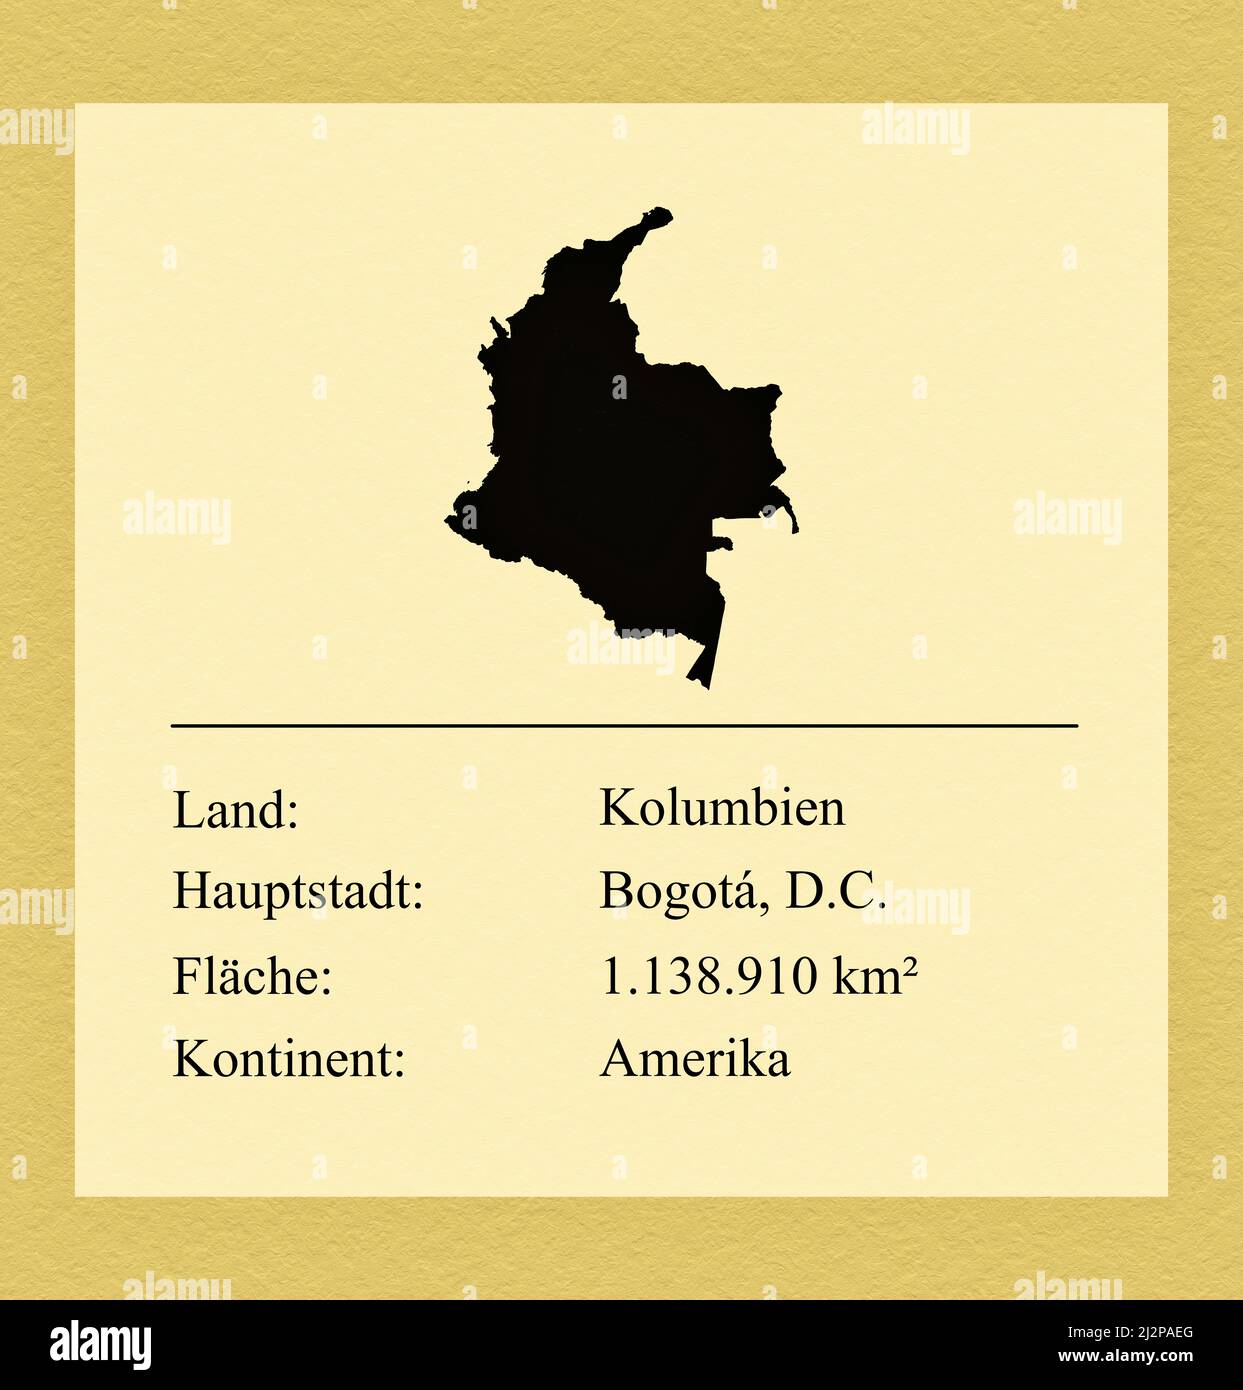 Umrisse des Landes Kolumbien, darunter ein kleiner Steckbrief mit Ländernamen, Hauptstadt, Fläche und Kontinent Stock Photo